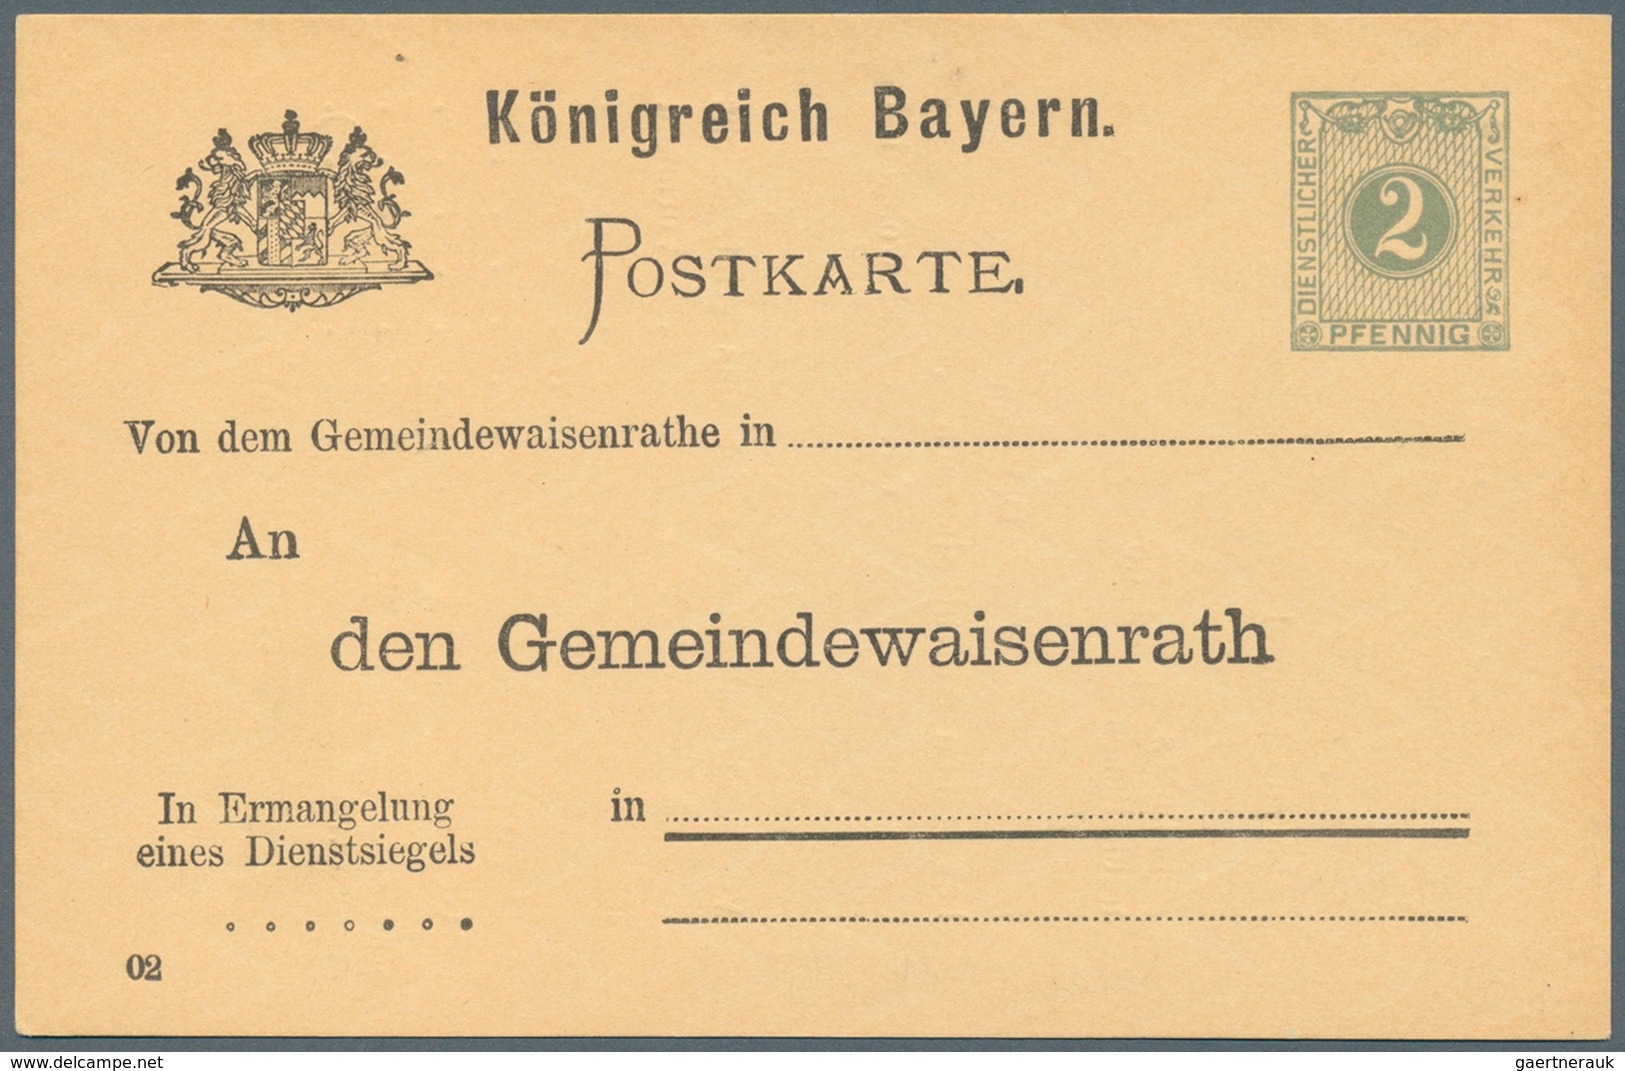 Bayern - Ganzsachen: 1876/1920. Sammlung von 47 ungebrauchten Postkarten. Dabei viele bessere Stücke